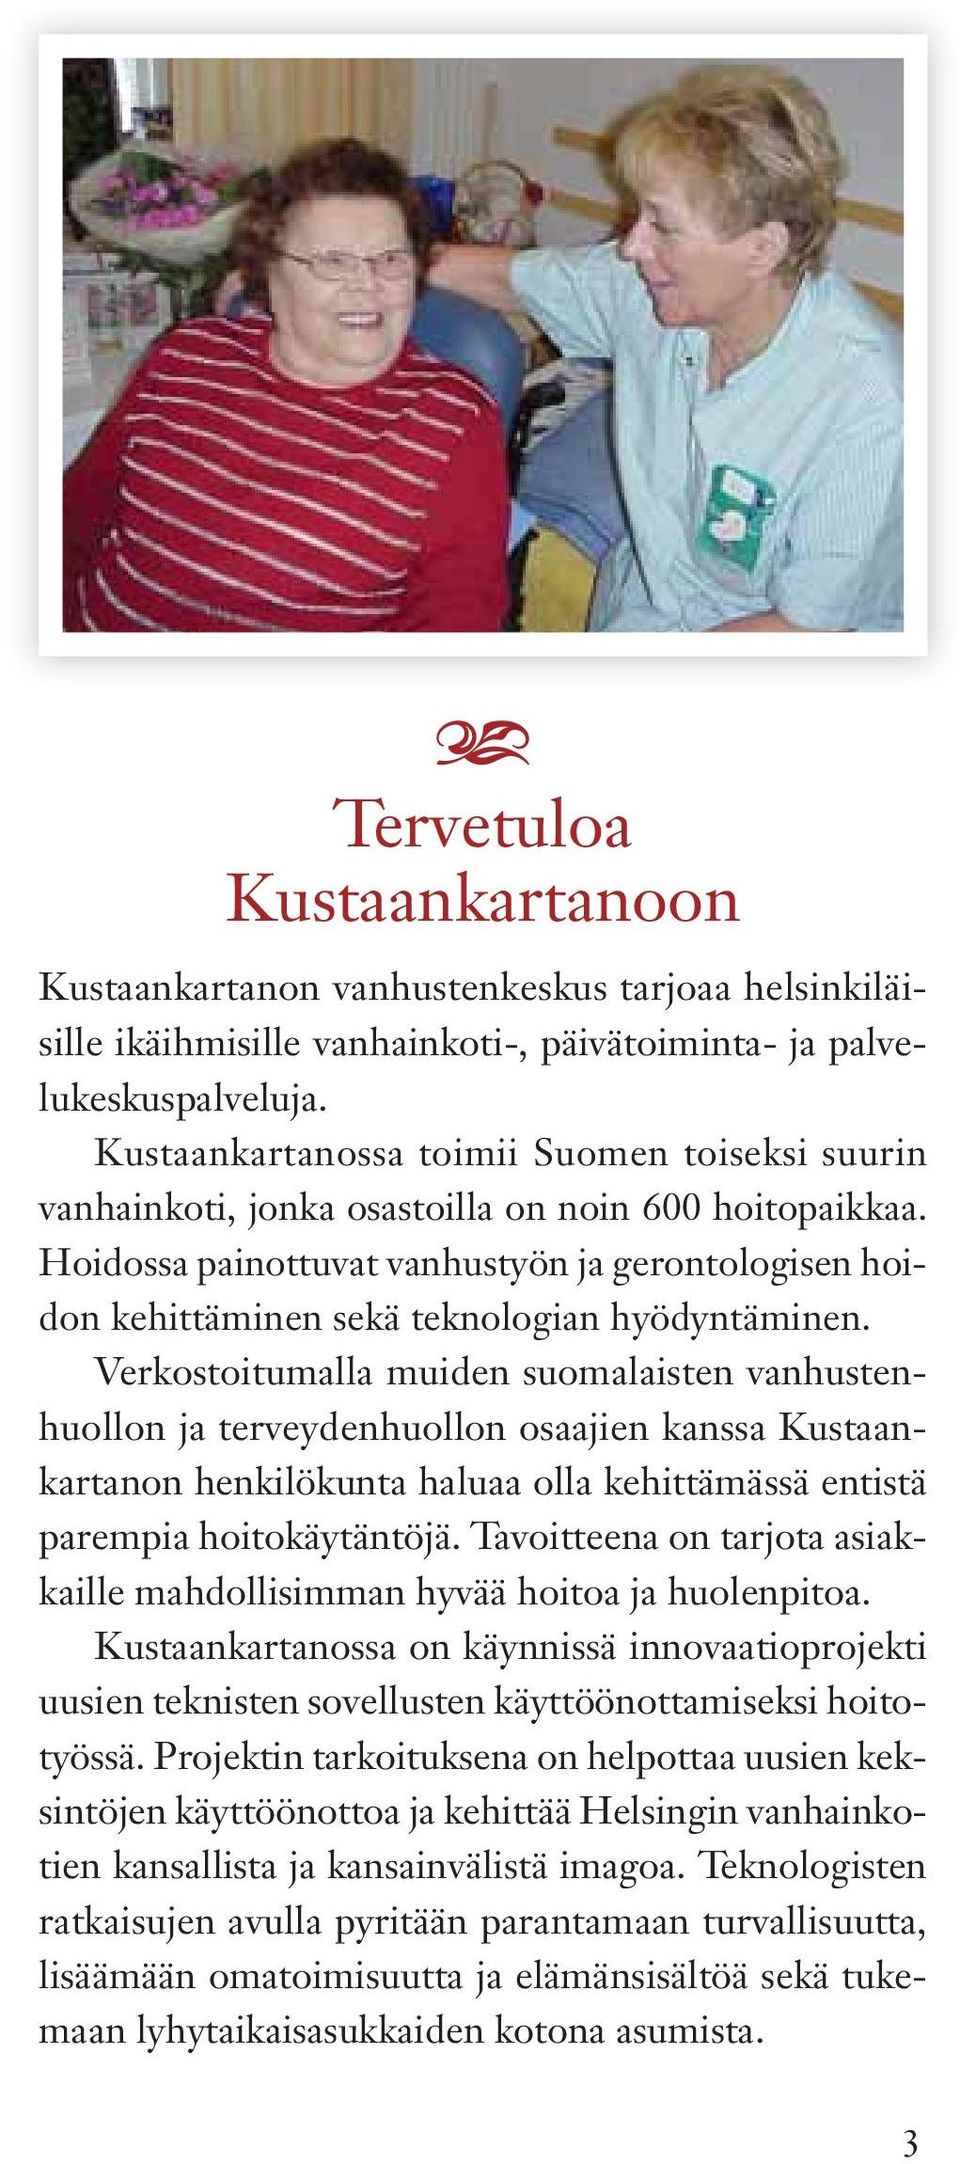 Verkostoitumll muiden suomlisten vnhustenhuollon j terveydenhuollon osjien knss Kustnkrtnon henkilökunt hlu oll kehittämässä entistä prempi hoitokäytäntöjä.